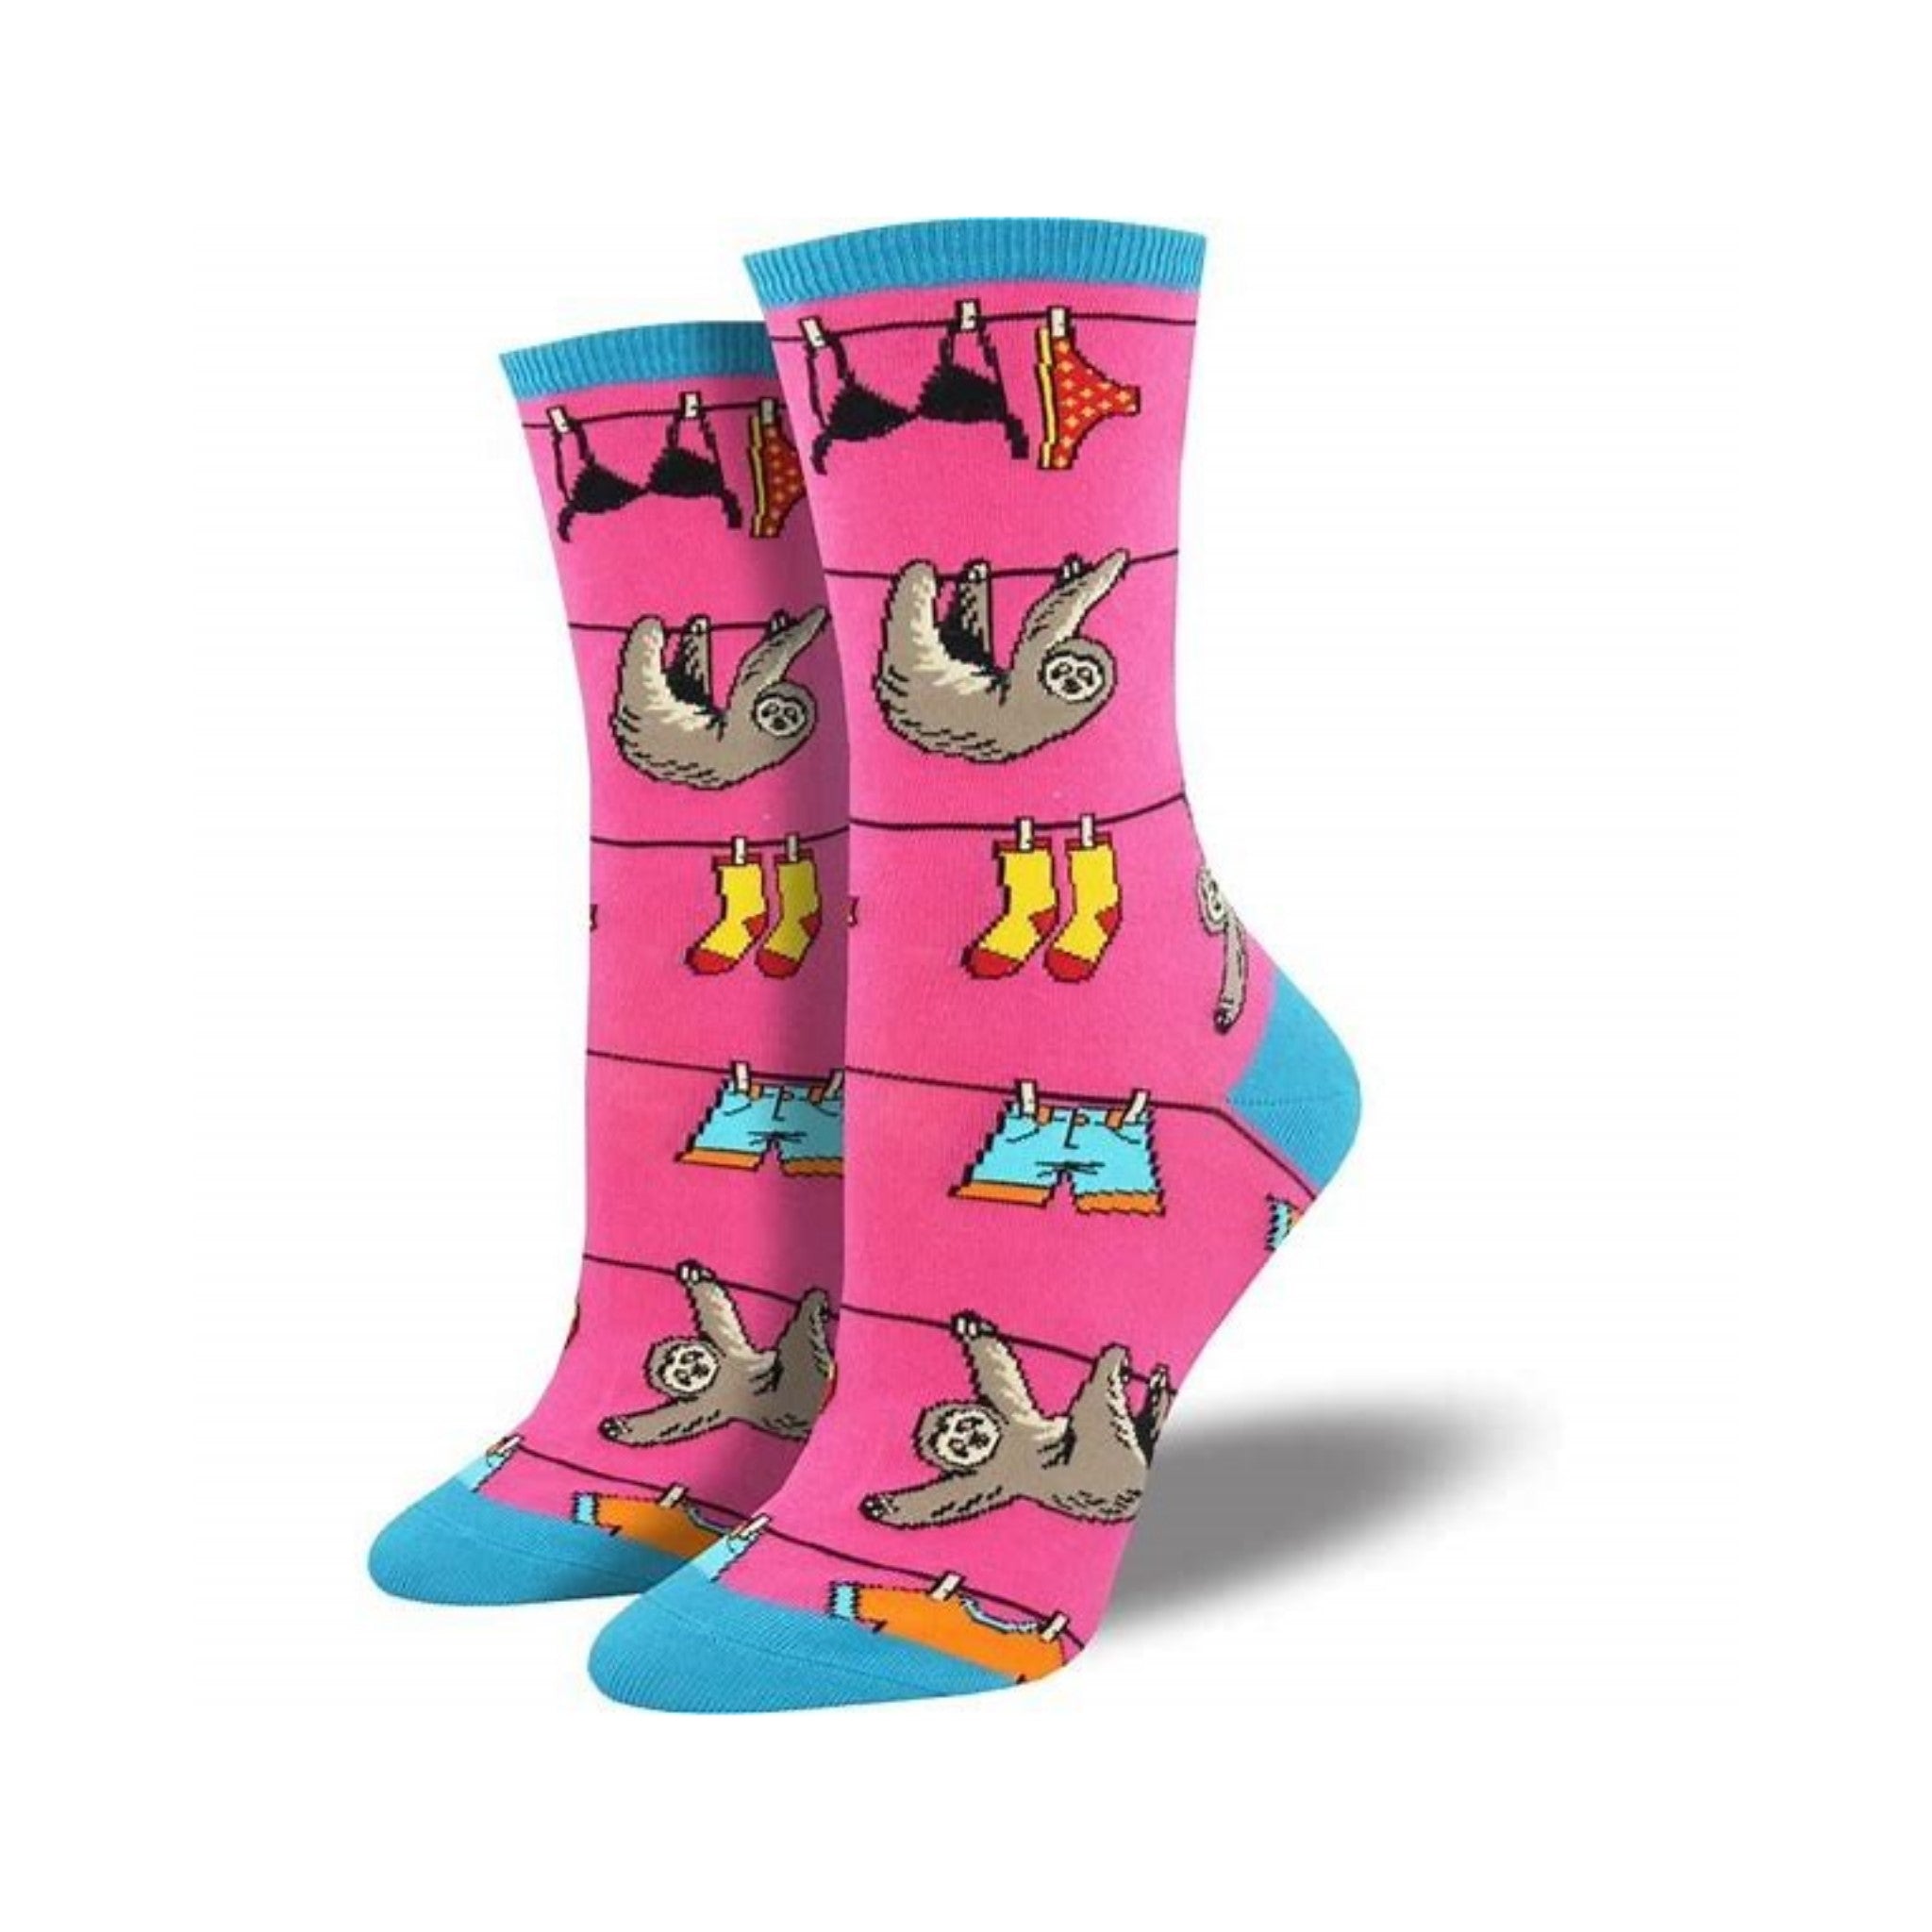 Sloth on a Line Socks (Adult Medium) Pink